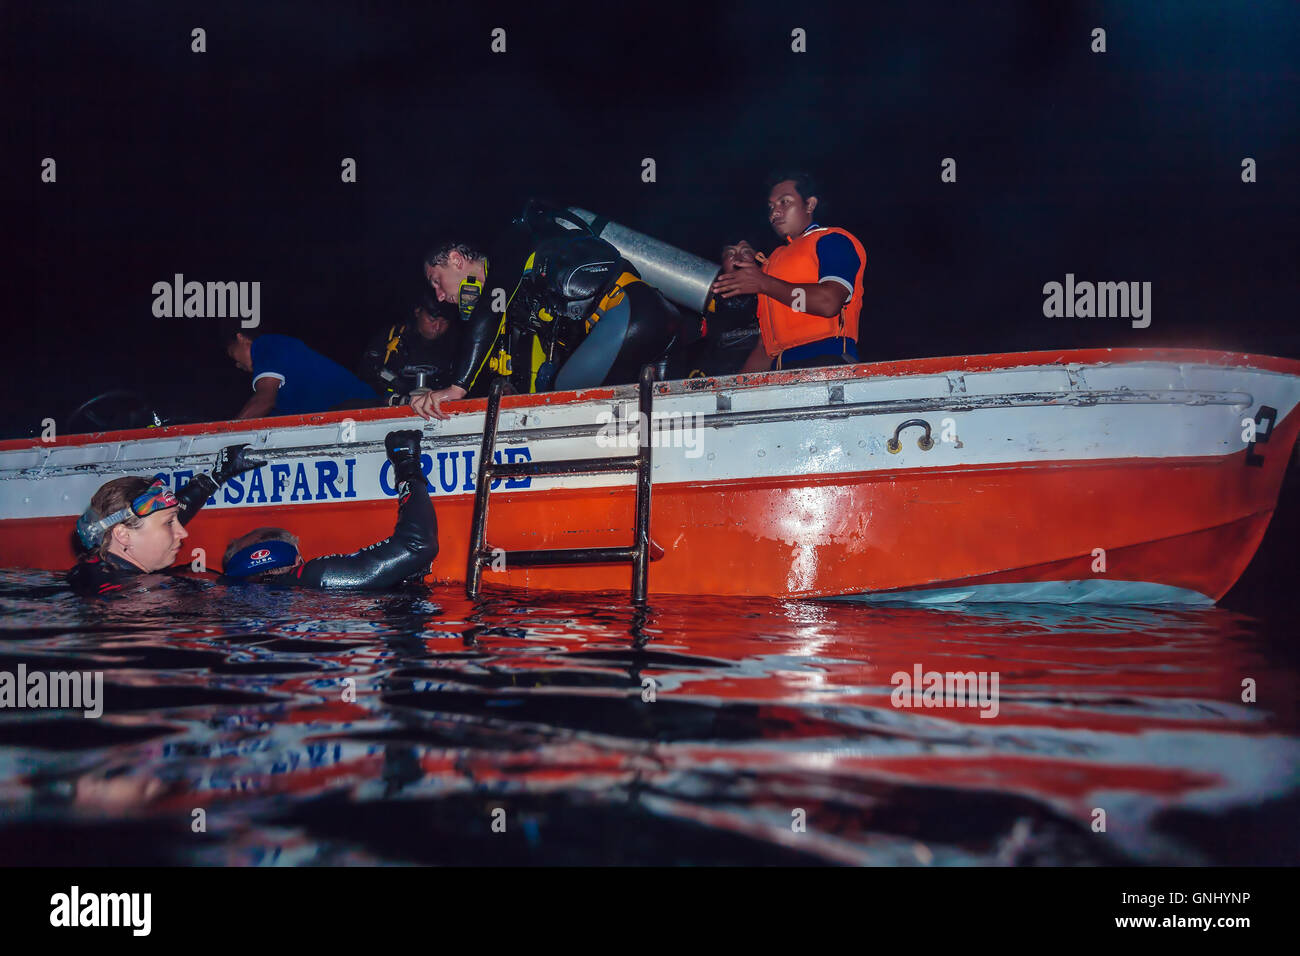 L'ÎLE DE BALI, INDONÉSIE - août 21, 2008 : Groupe de plongeurs escalade à petit bateau après la plongée de nuit Banque D'Images